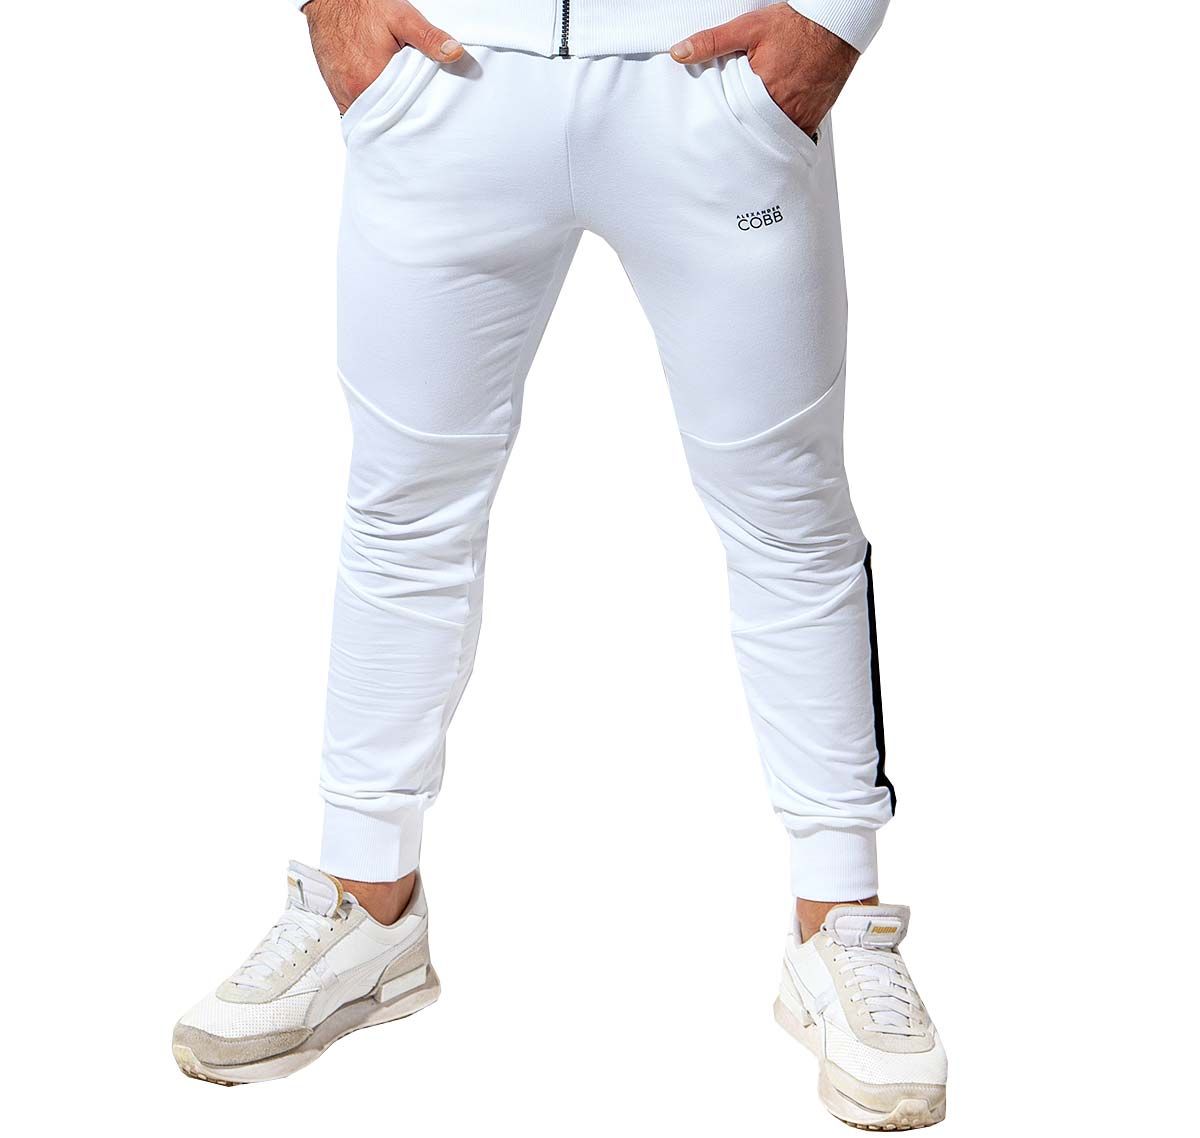 Alexander COBB Pantaloni sportivi lunghi PANTS WHITE BLACK, bianco